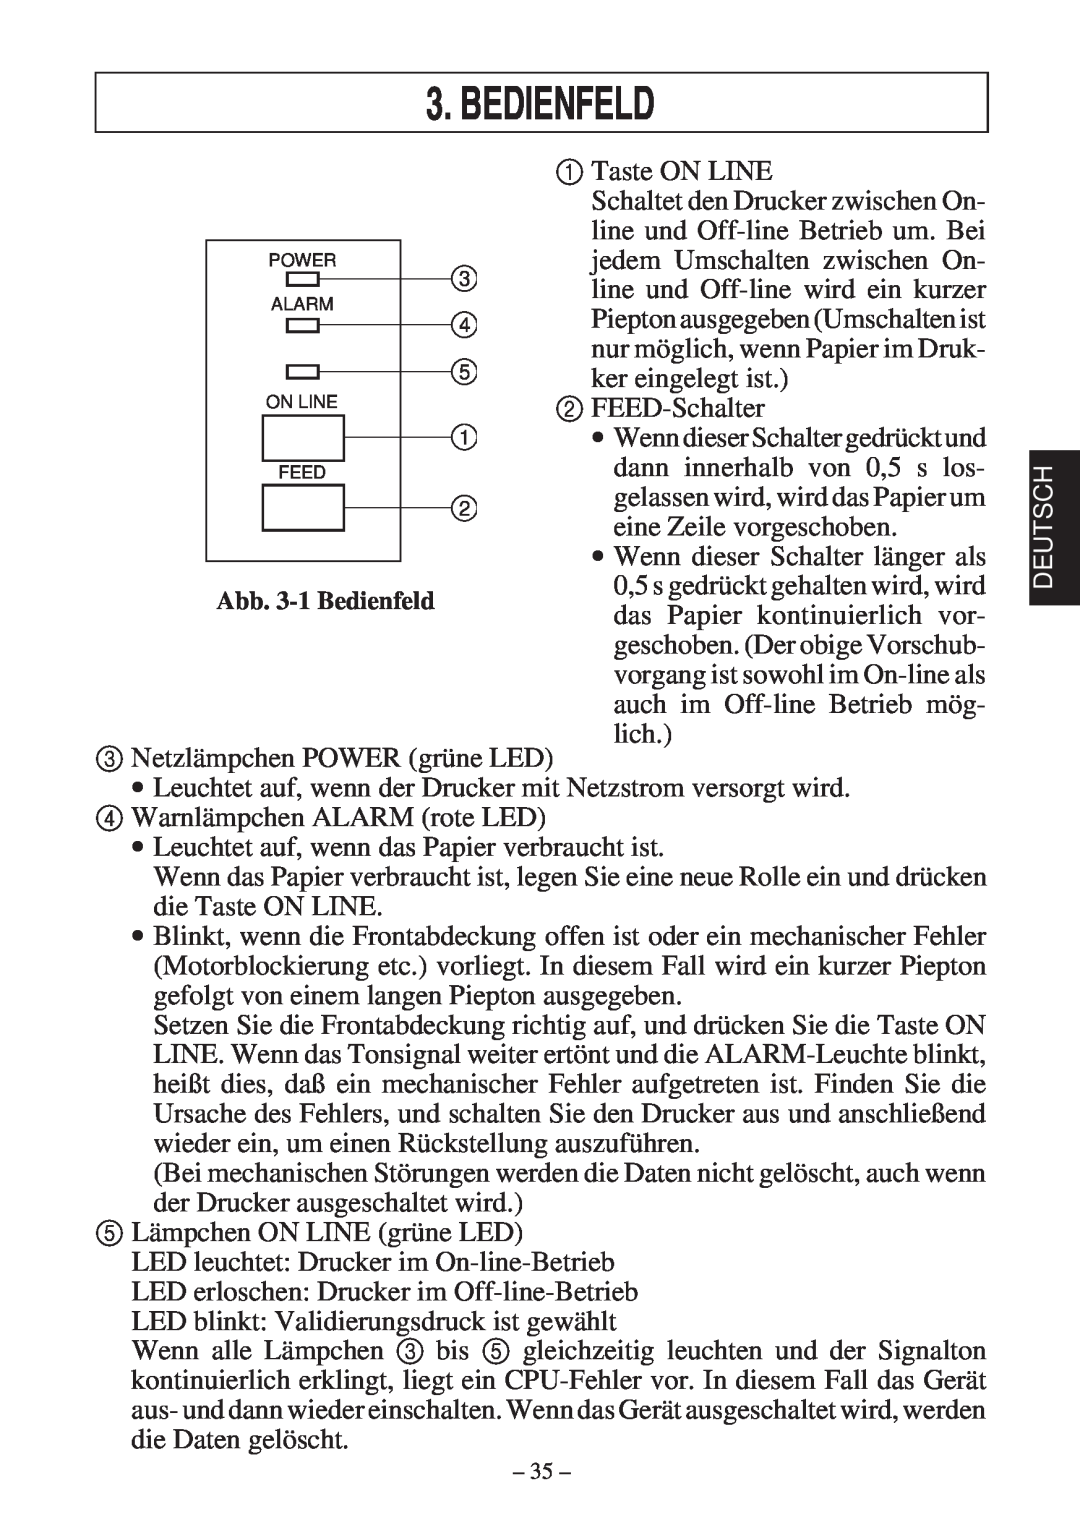 Star Micronics 347F user manual Bedienfeld 